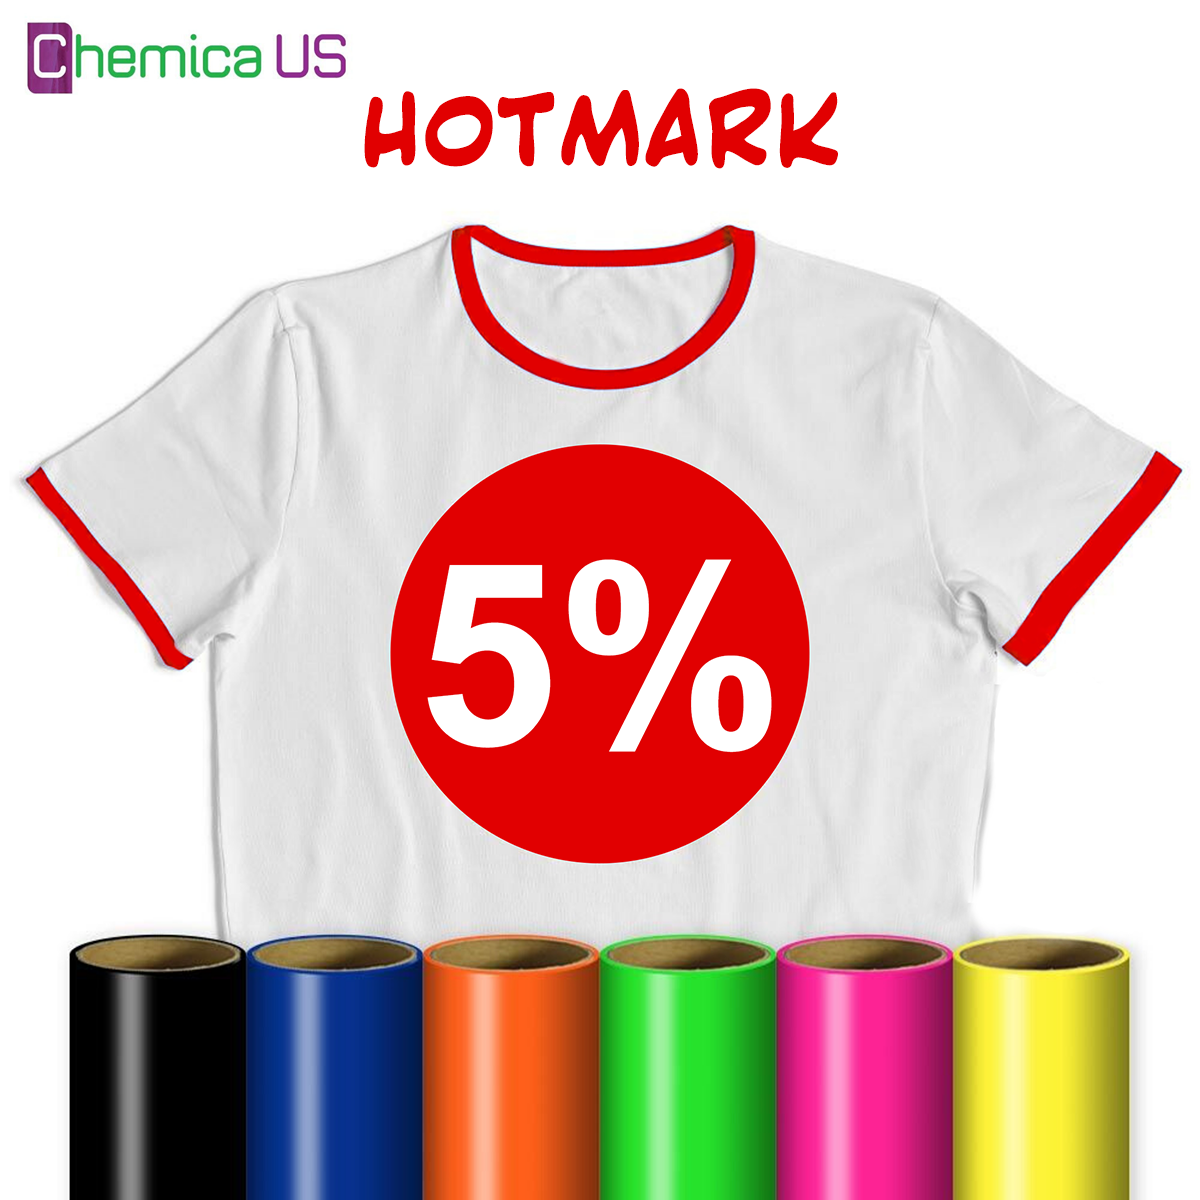   5%  ˨ HOTMARK